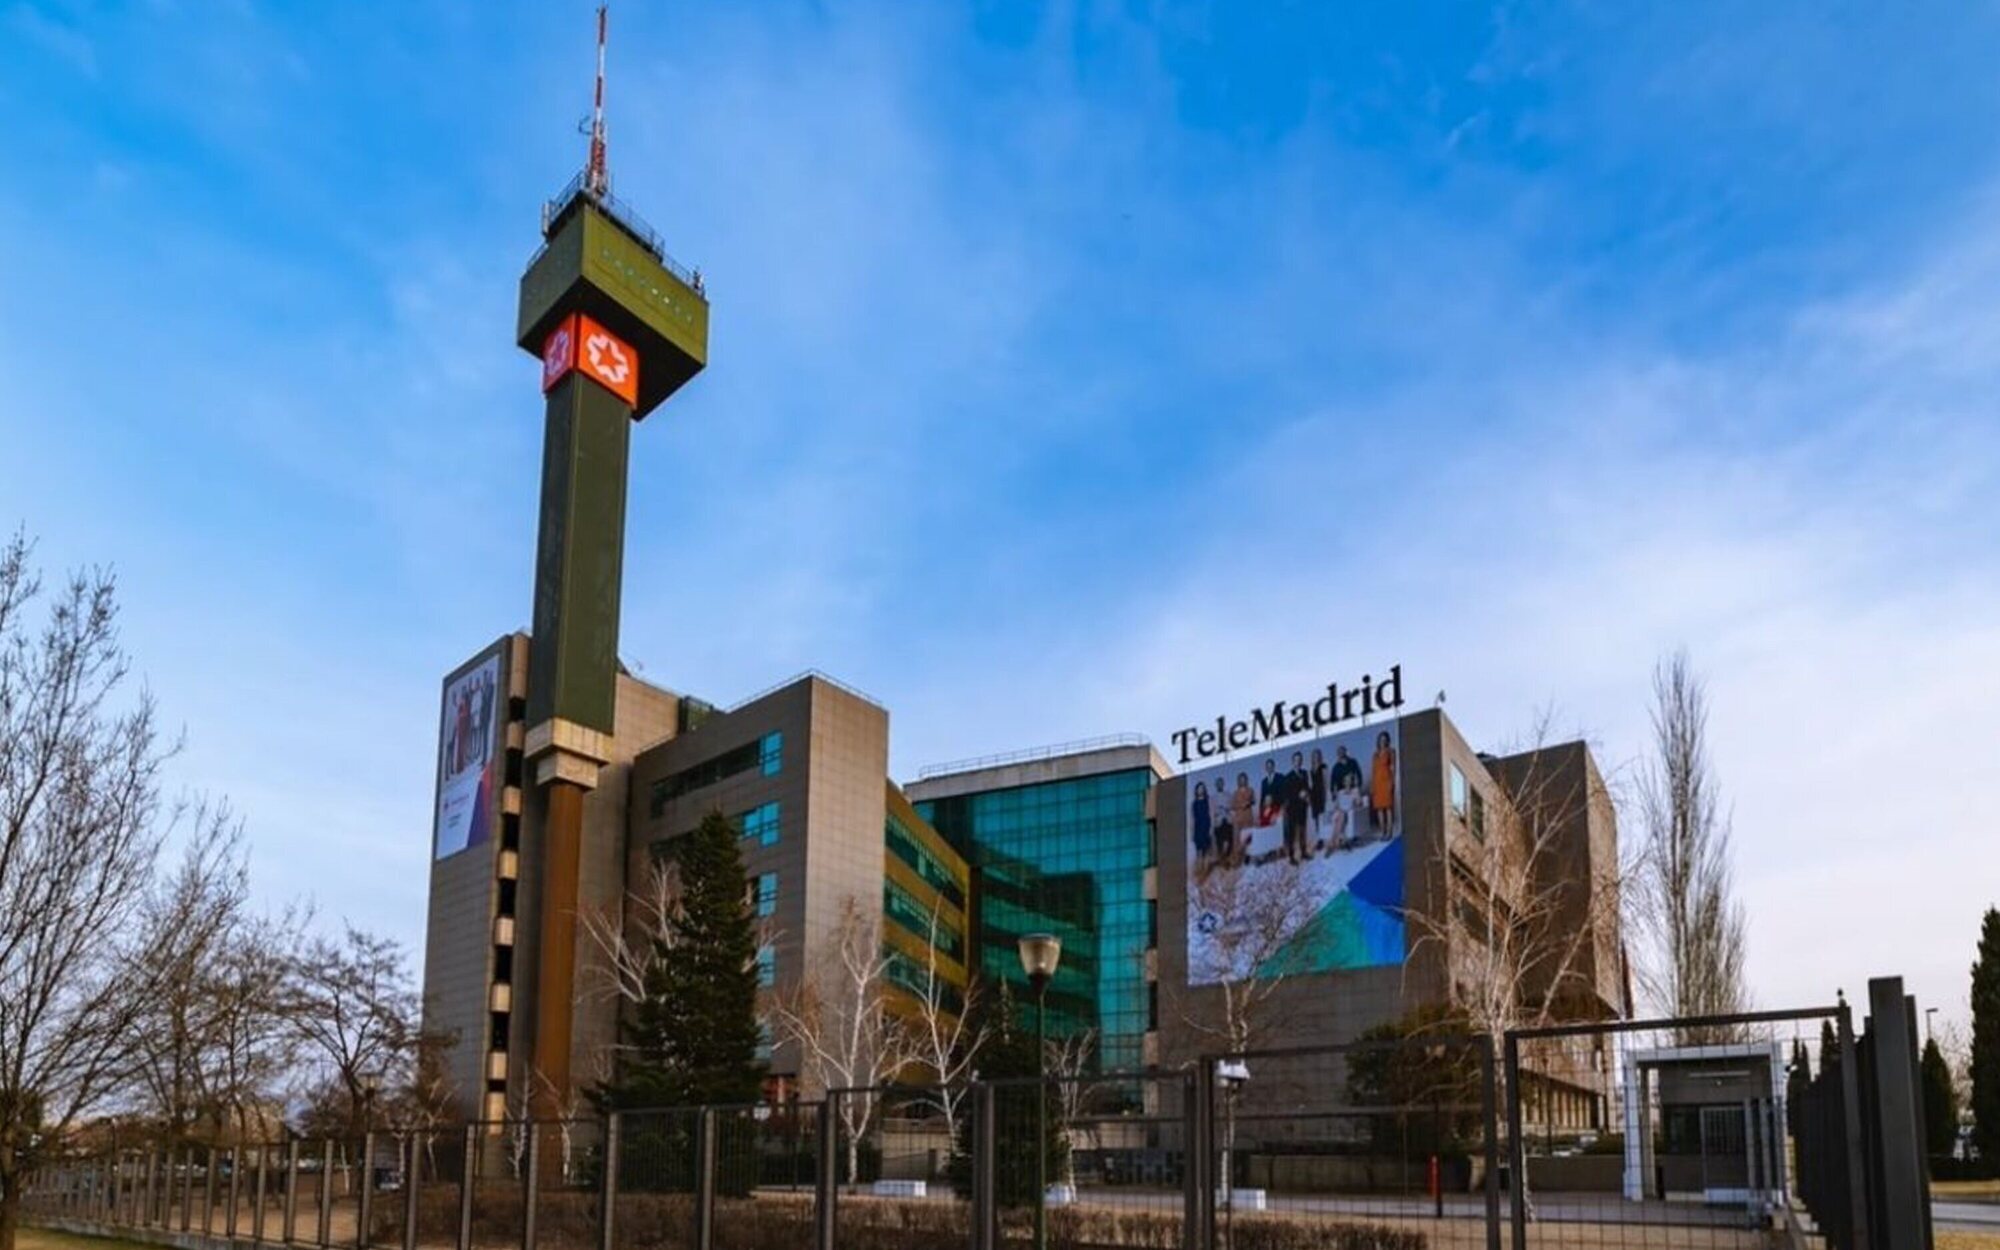 El Ayuntamiento de Madrid reclama una Telemadrid "libre" gracias a Ciudadanos y Más Madrid